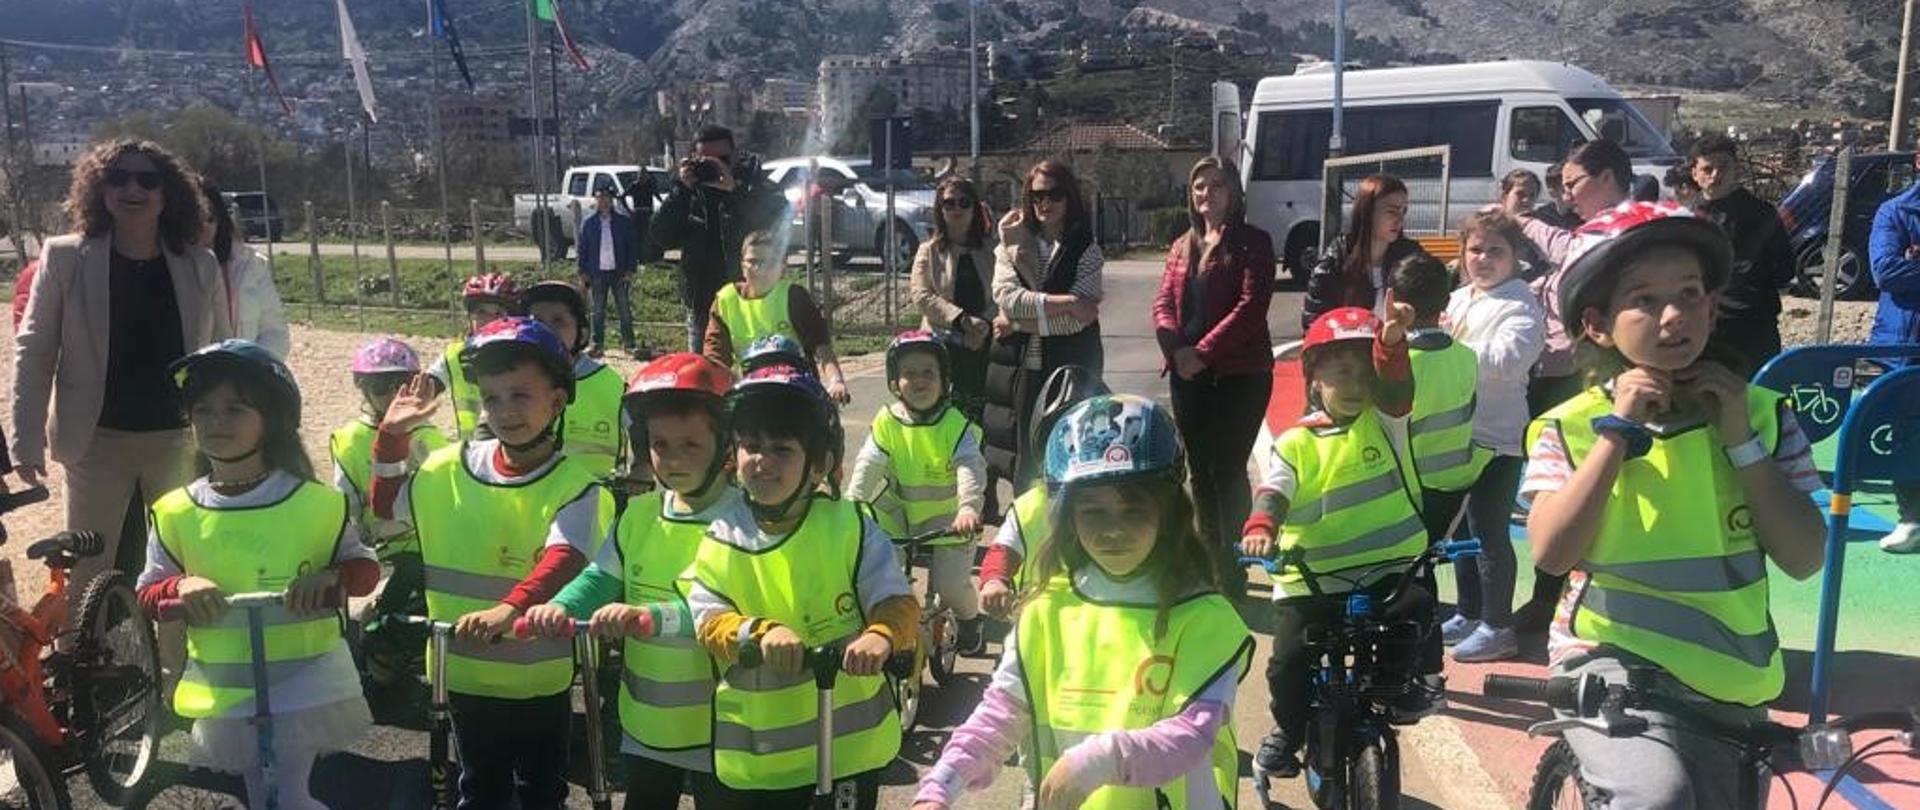 Widok z przodu. Dzieci ubrane w żółte, odblaskowe kamizelki i kaski rowerowe. Dzieci w pierwszym rzędzie stoją na hulajnogach. Dzieci w drugim rzędzie siedzą na rowerach. Za dziećmi stoją dorośli ludzie. W tle widać drogę z zaparkowanymi samochodami i góry. 